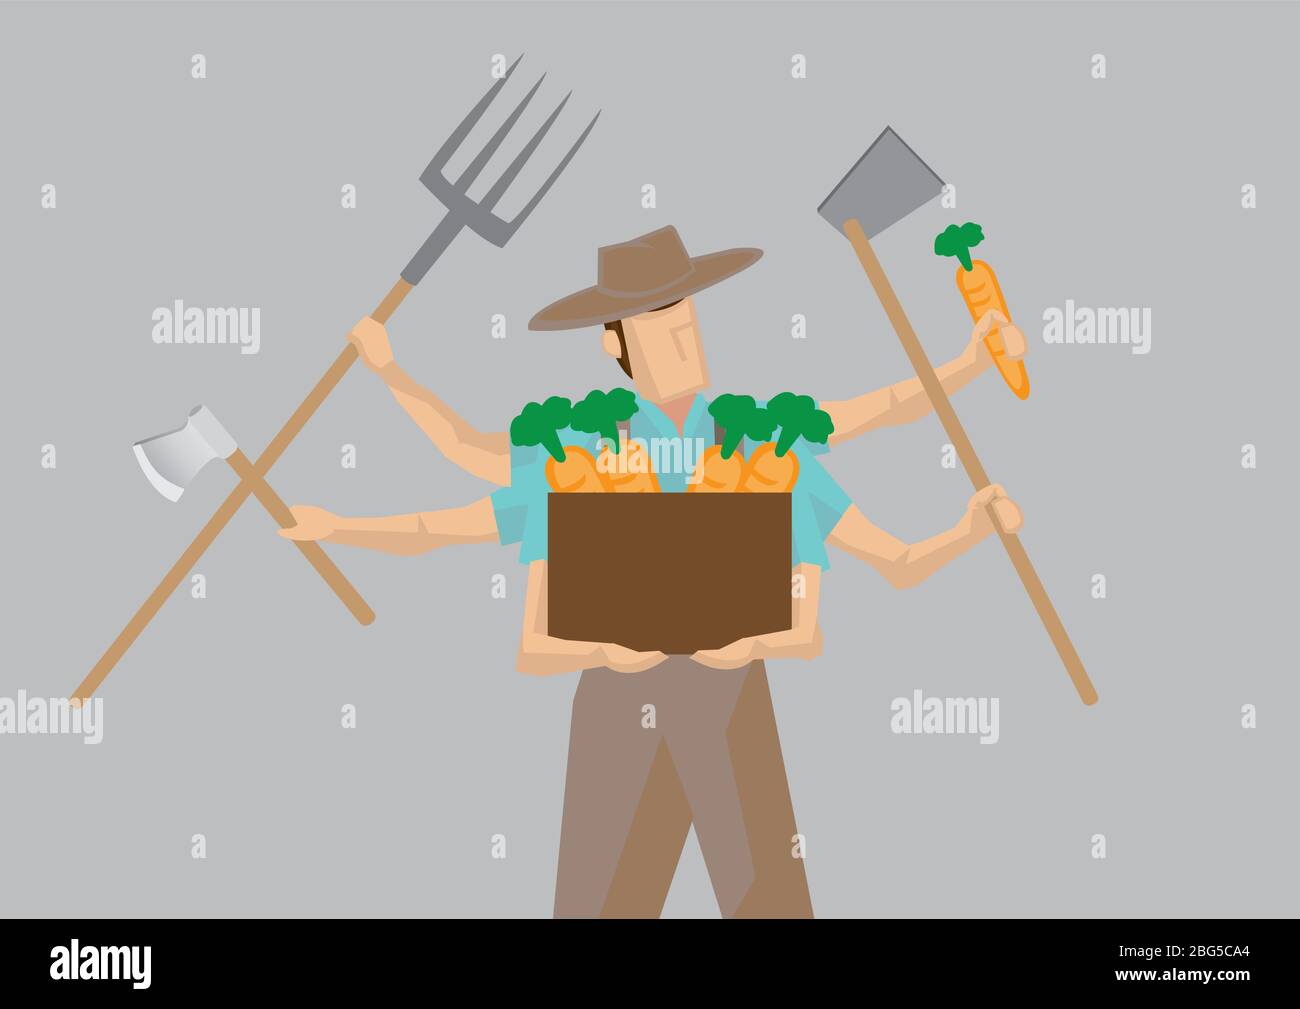 Illustration vectorielle d'un personnage de dessin animé animé d'un agriculteur avec plusieurs bras contenant différents outils de travail isolés sur fond gris clair. Illustration de Vecteur